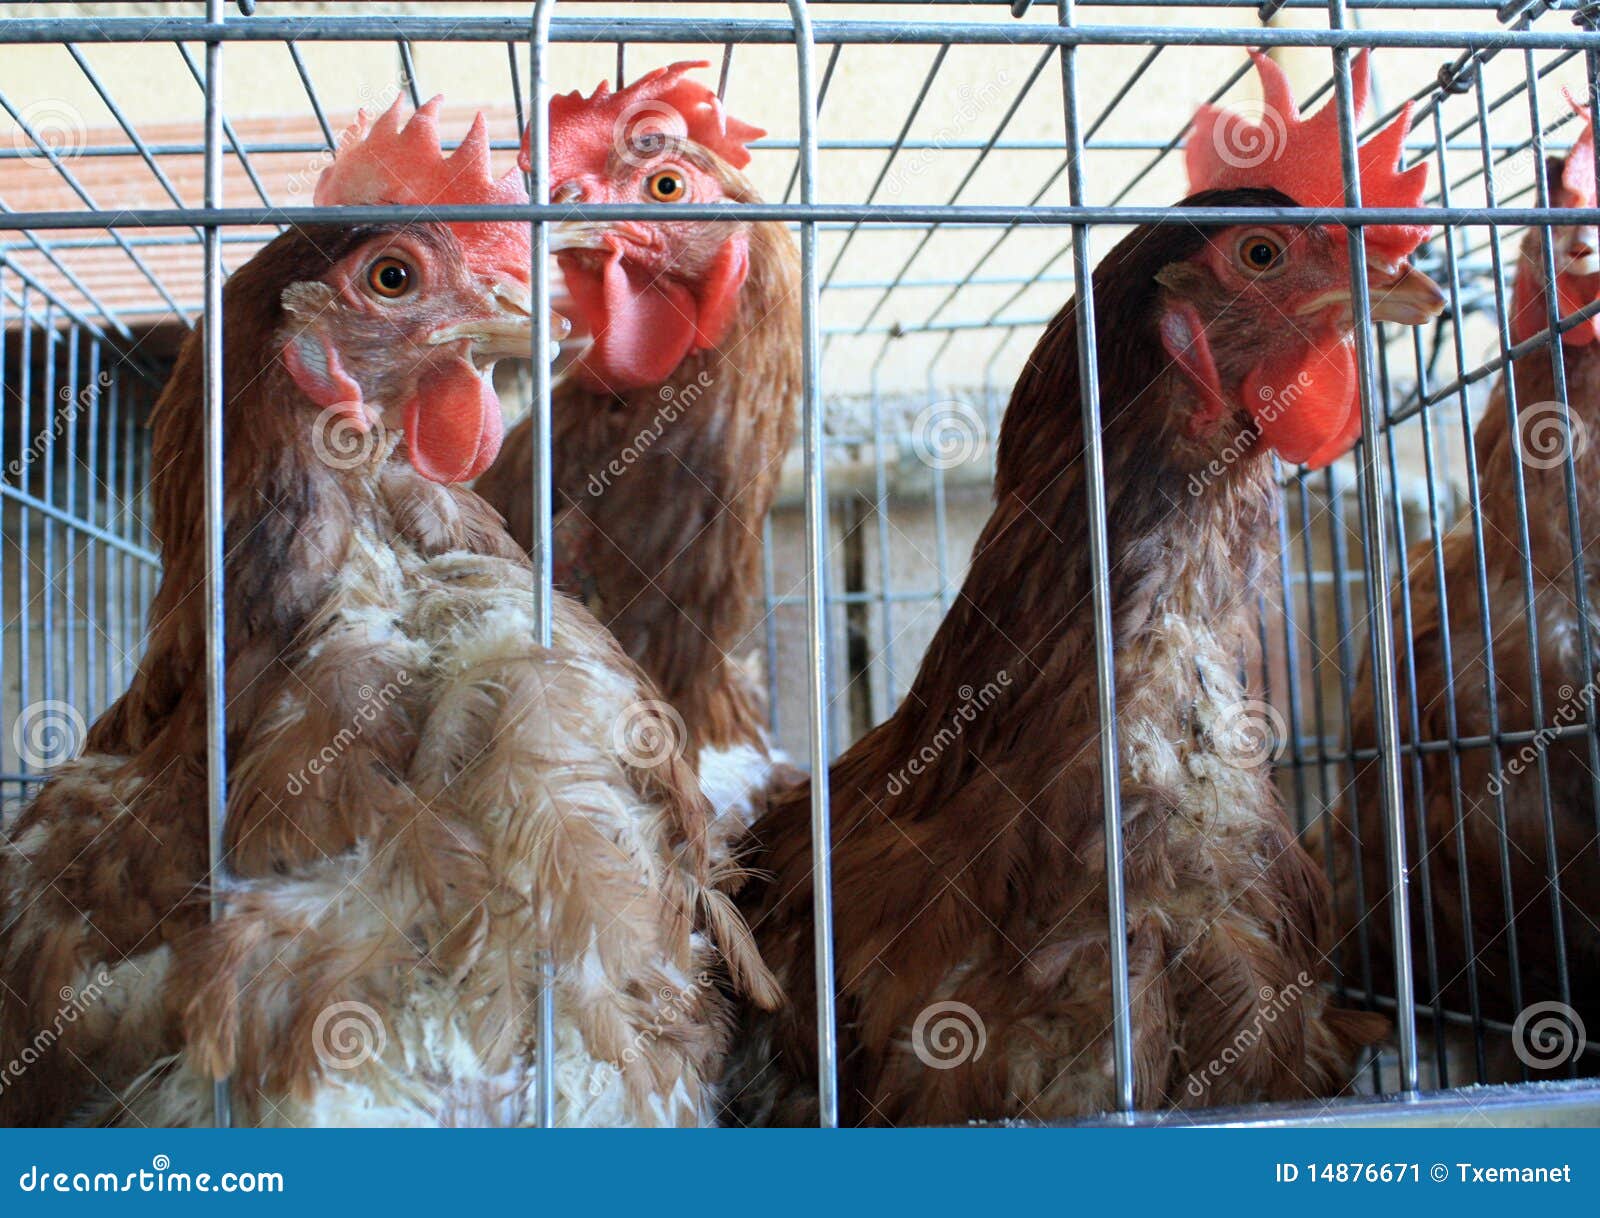 Galline ovaiole. Desntro delle galline ovaiole delle sue gabbie in un'azienda avicola.